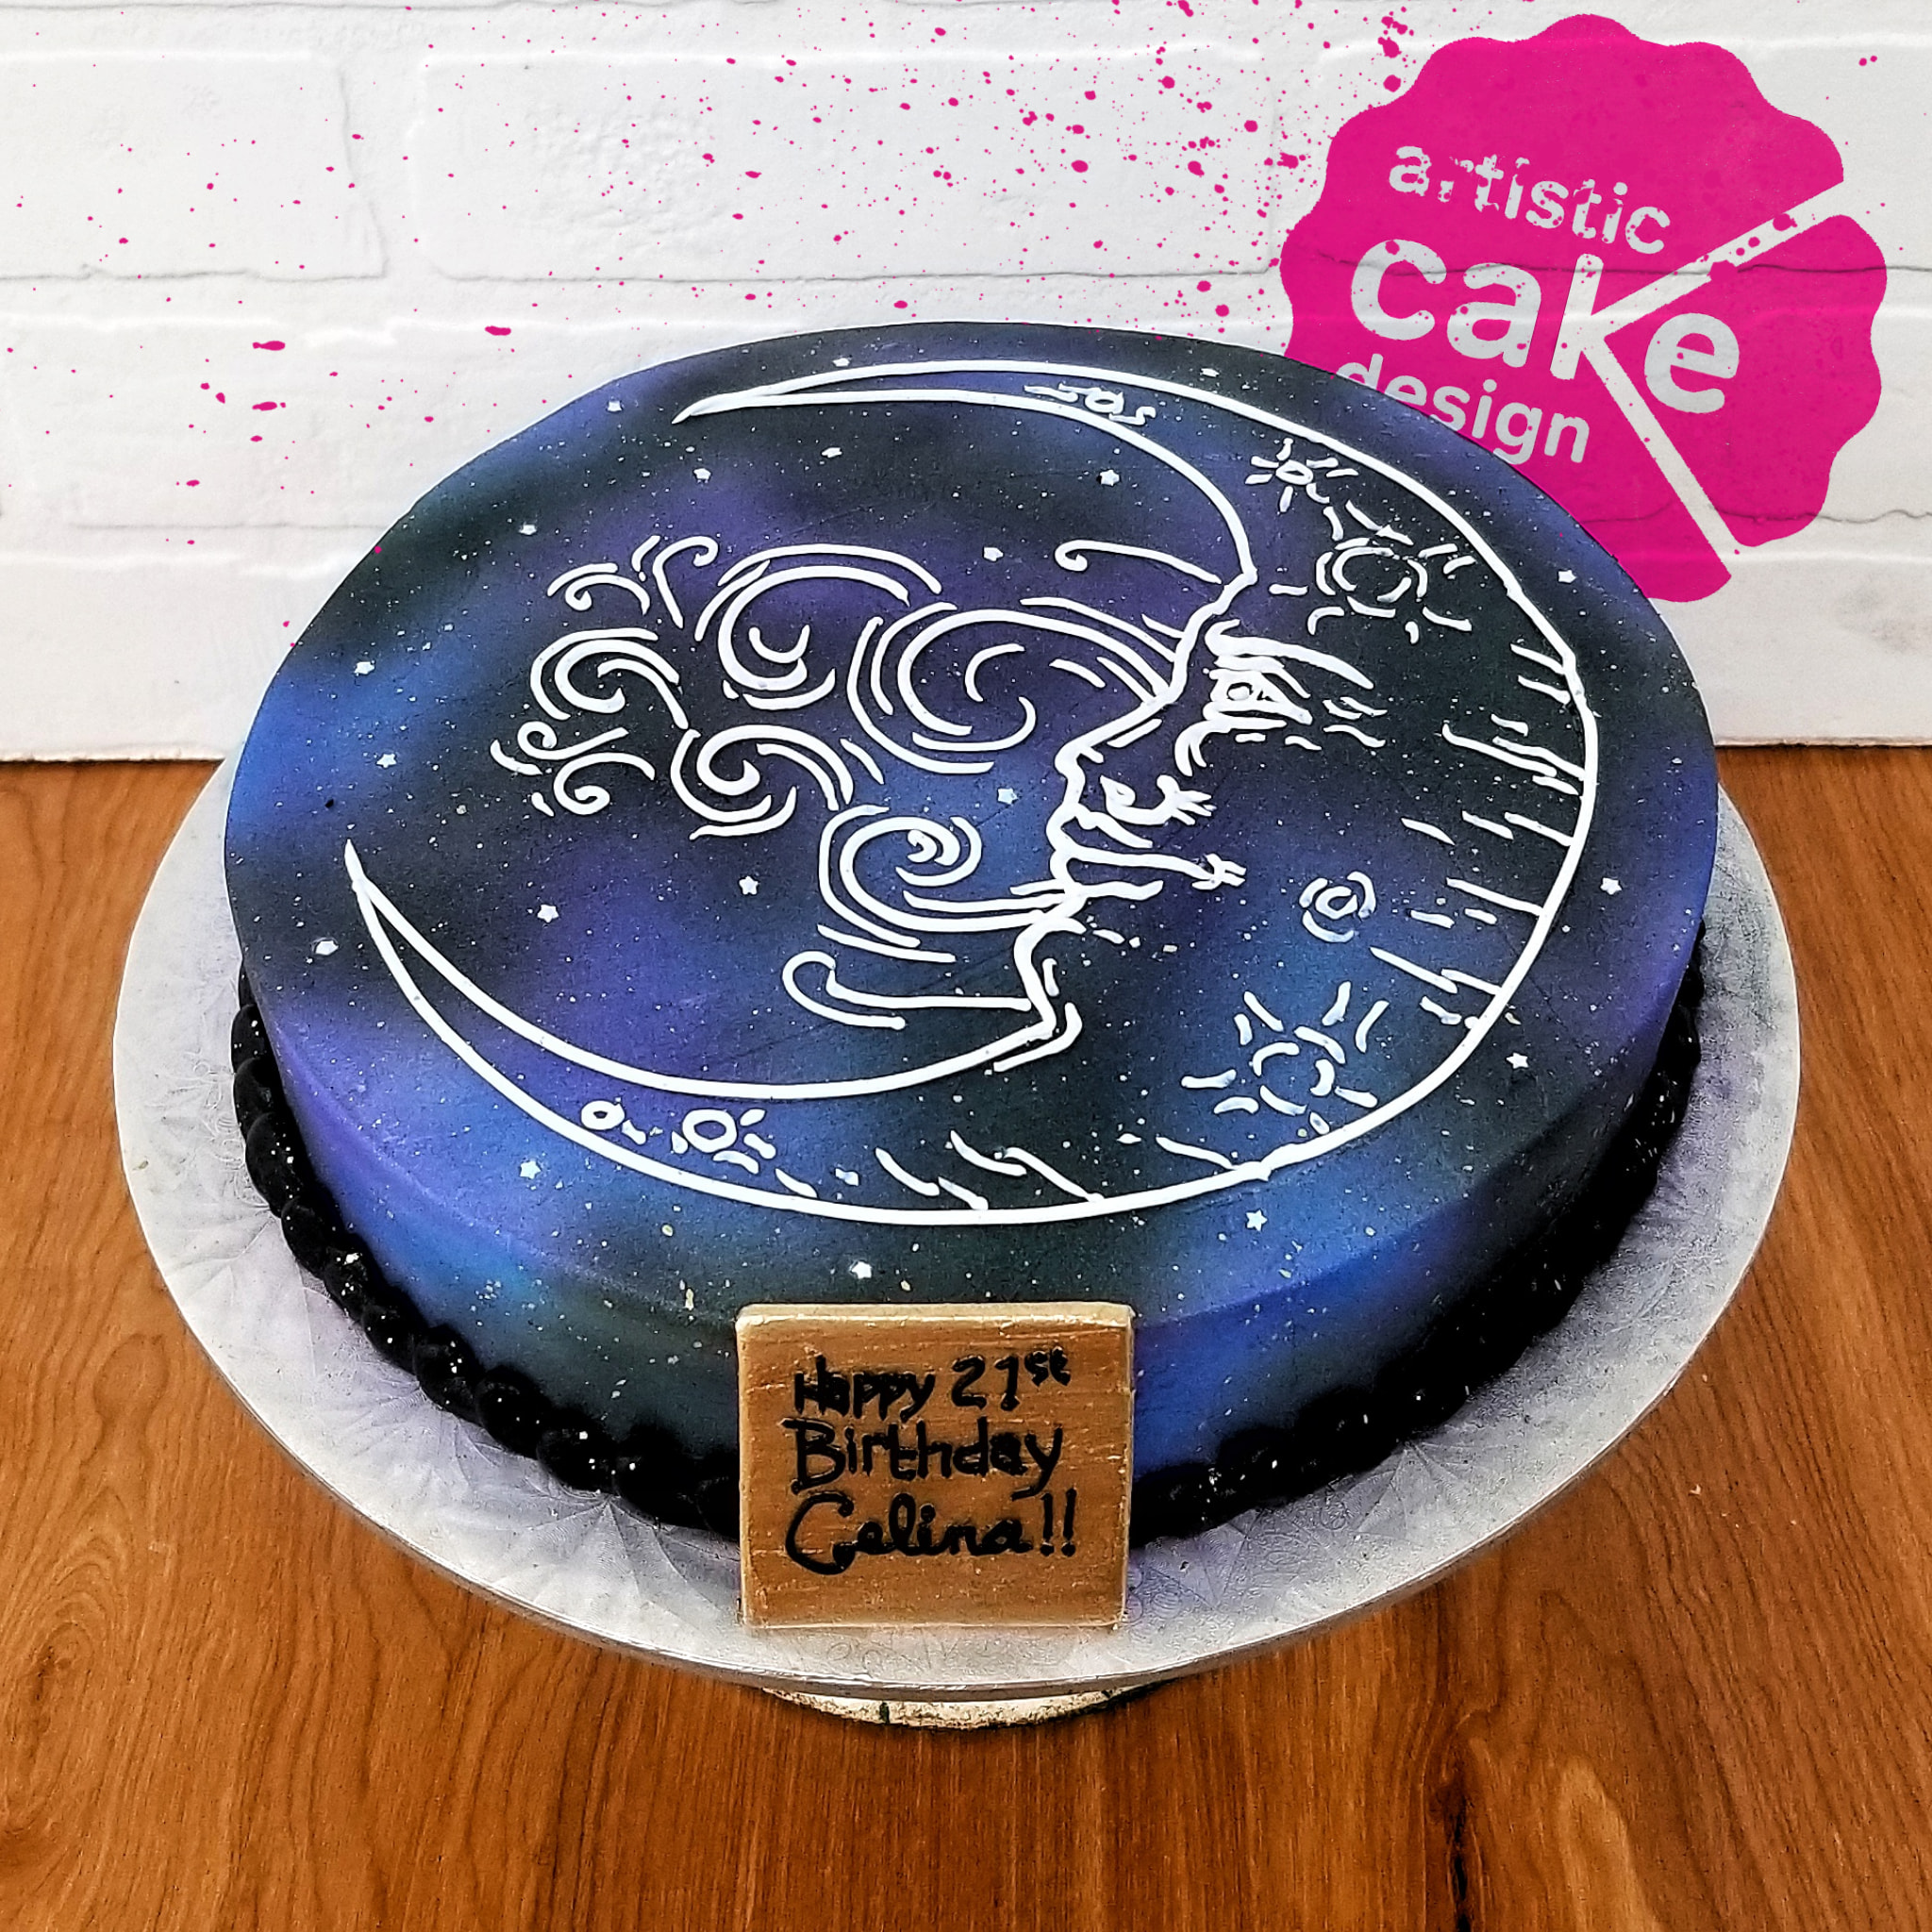 Louis Vuitton Cake Ideas  21st birthday cakes, 35th birthday